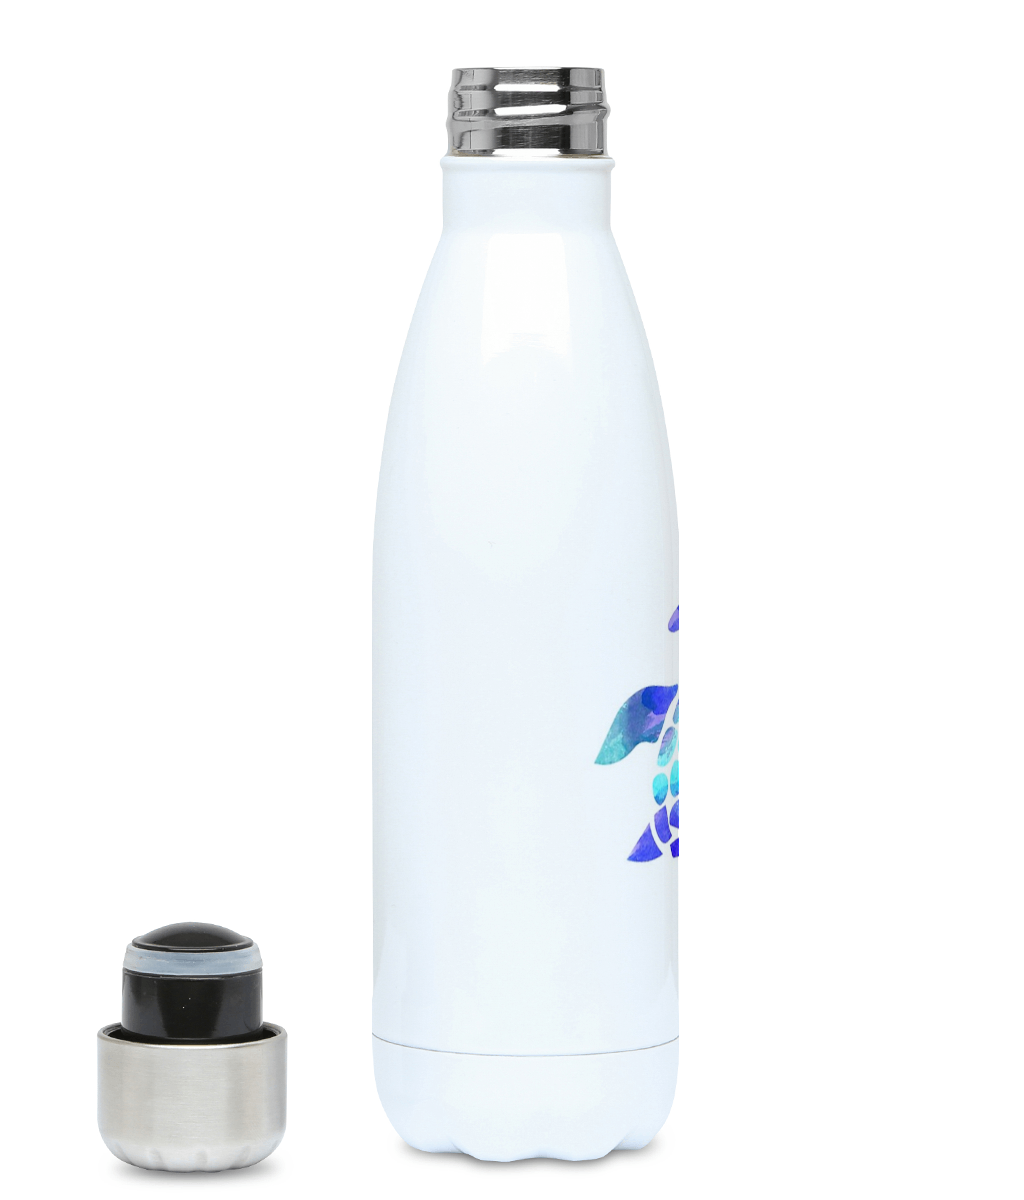 Water bottle test